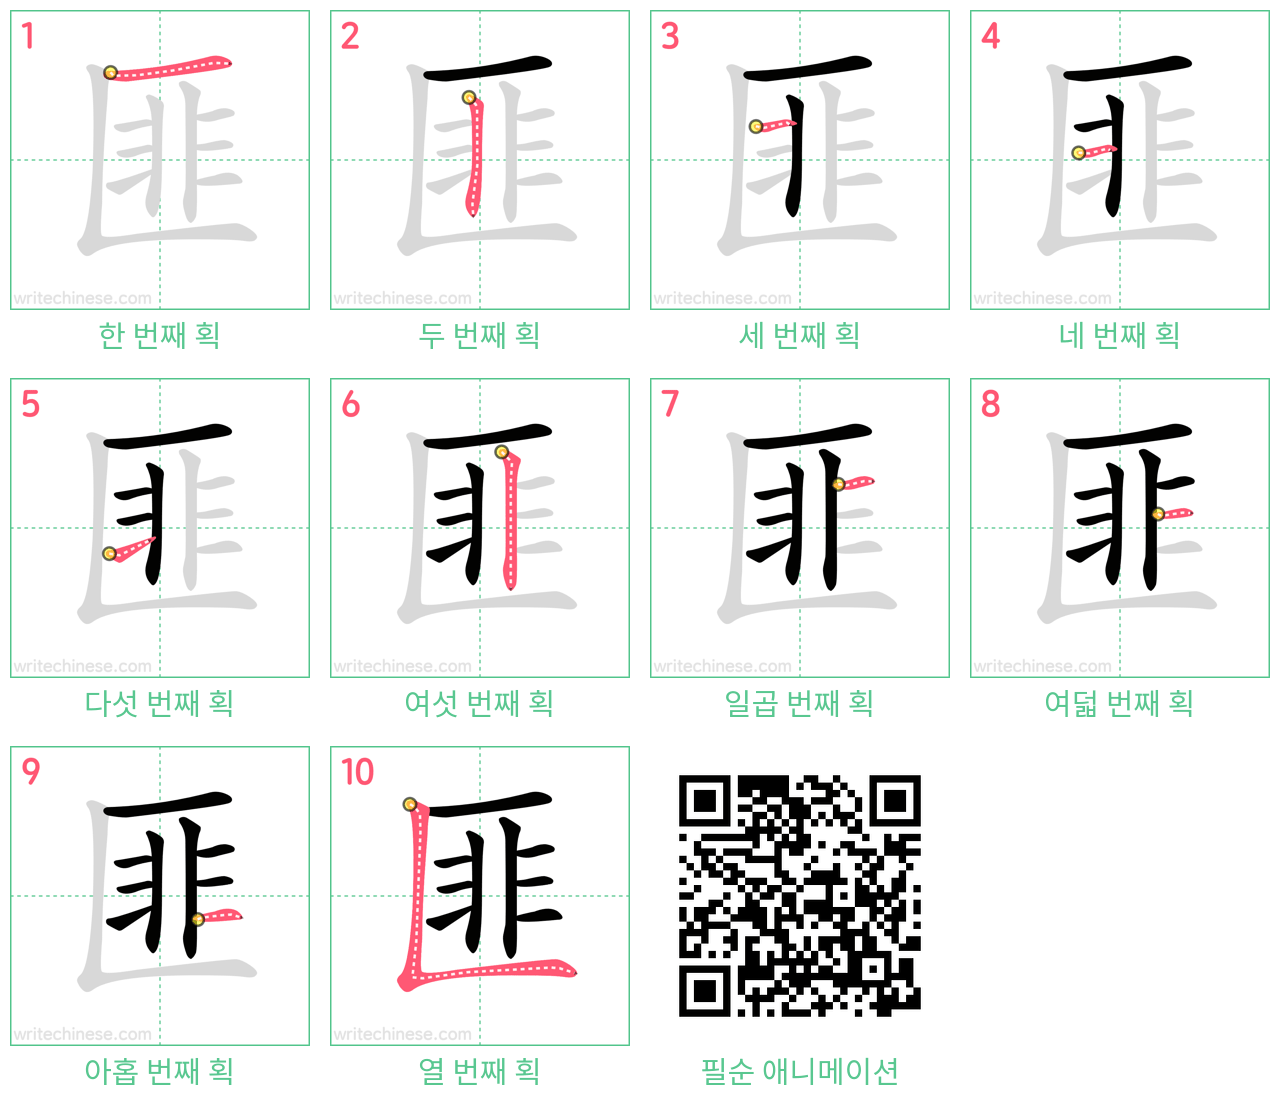 匪 step-by-step stroke order diagrams